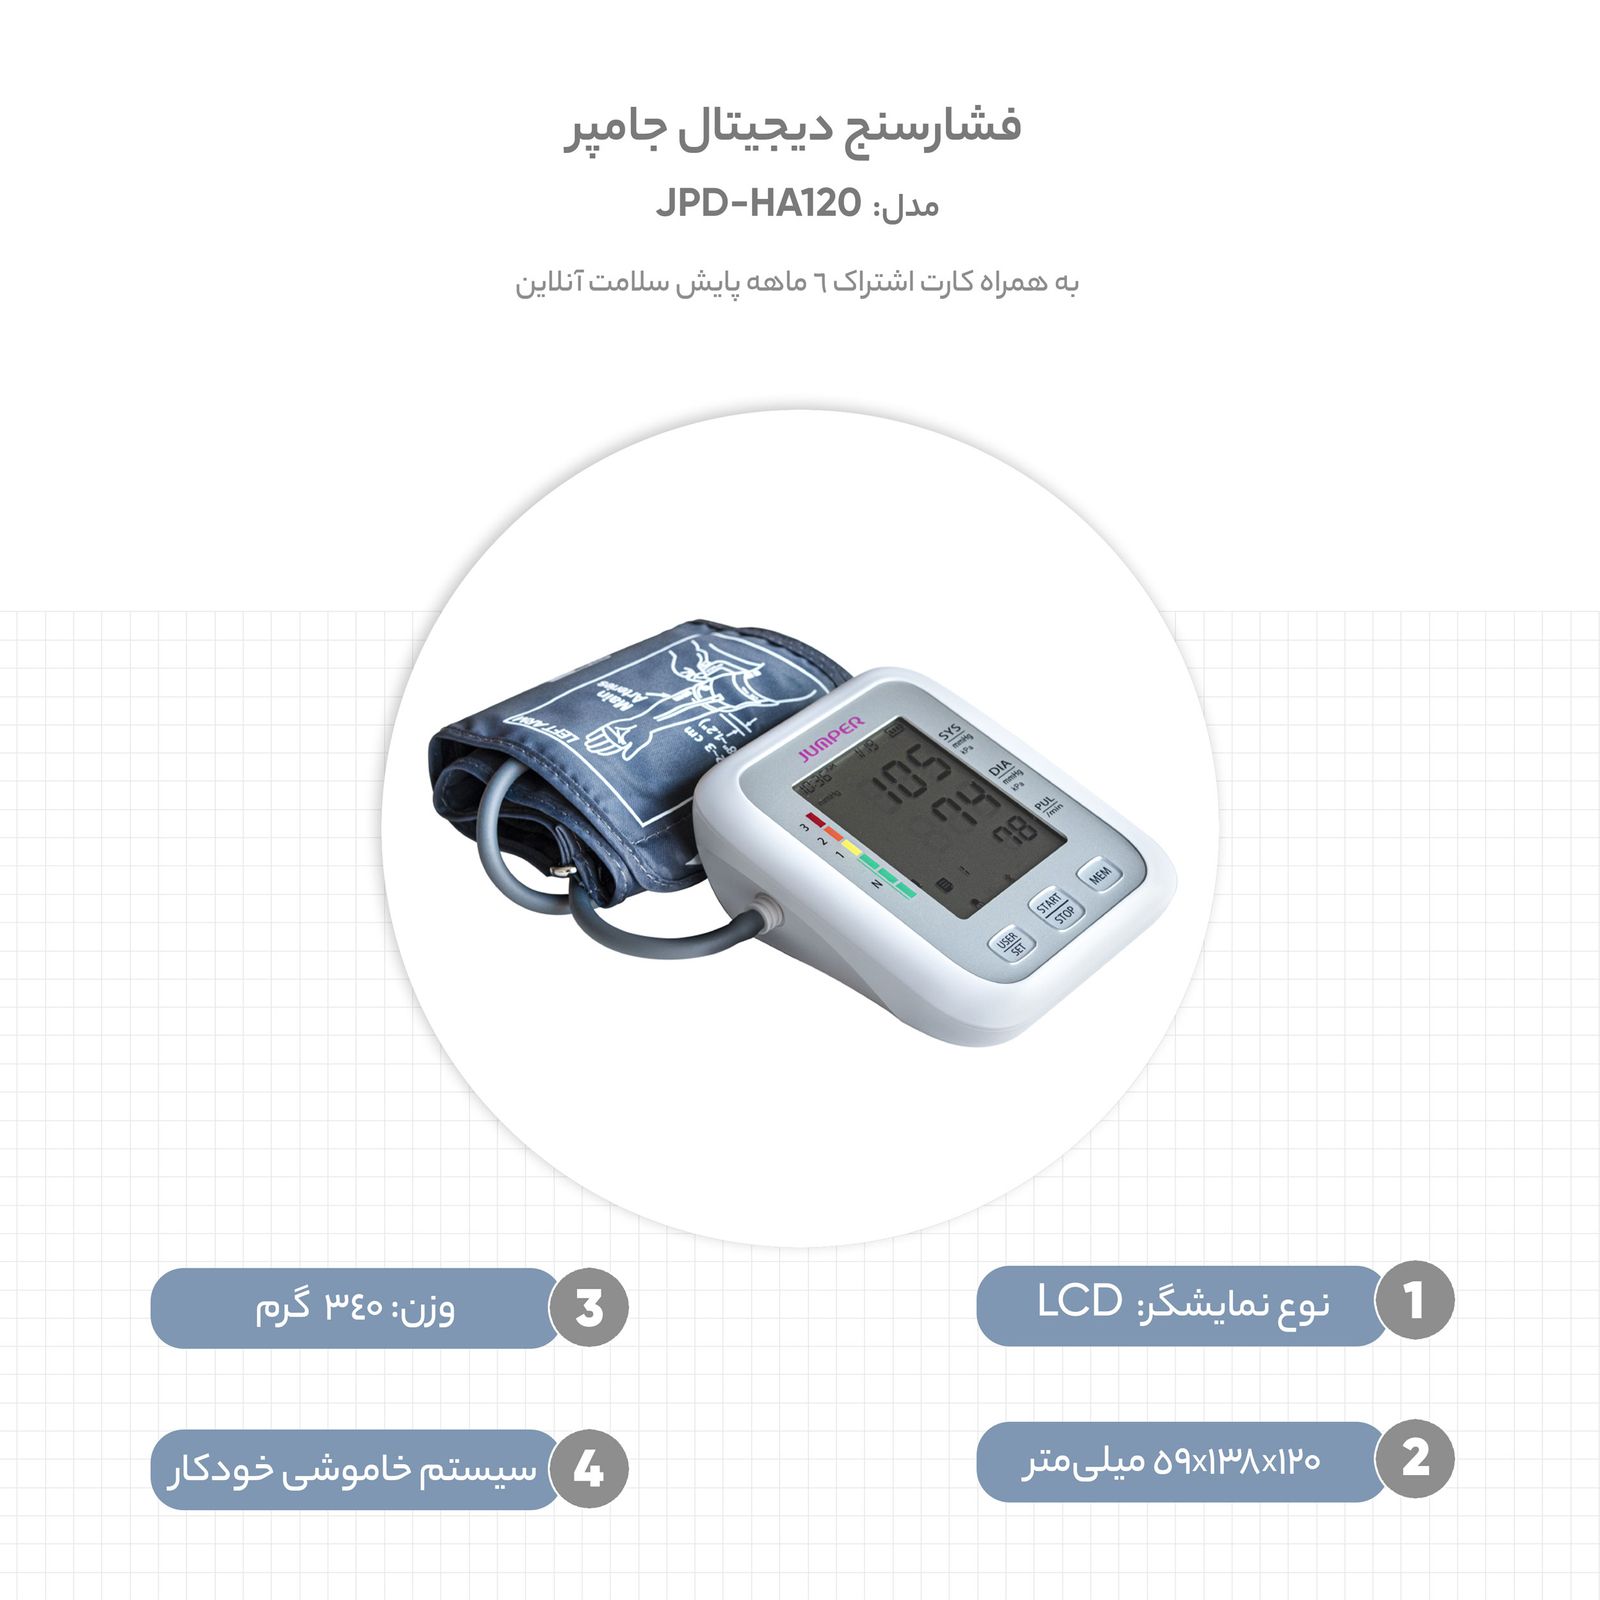 فشارسنج دیجیتال جامپر مدل JPD-HA120 به همراه کارت اشتراک 6 ماهه پایش سلامت آنلاین -  - 8